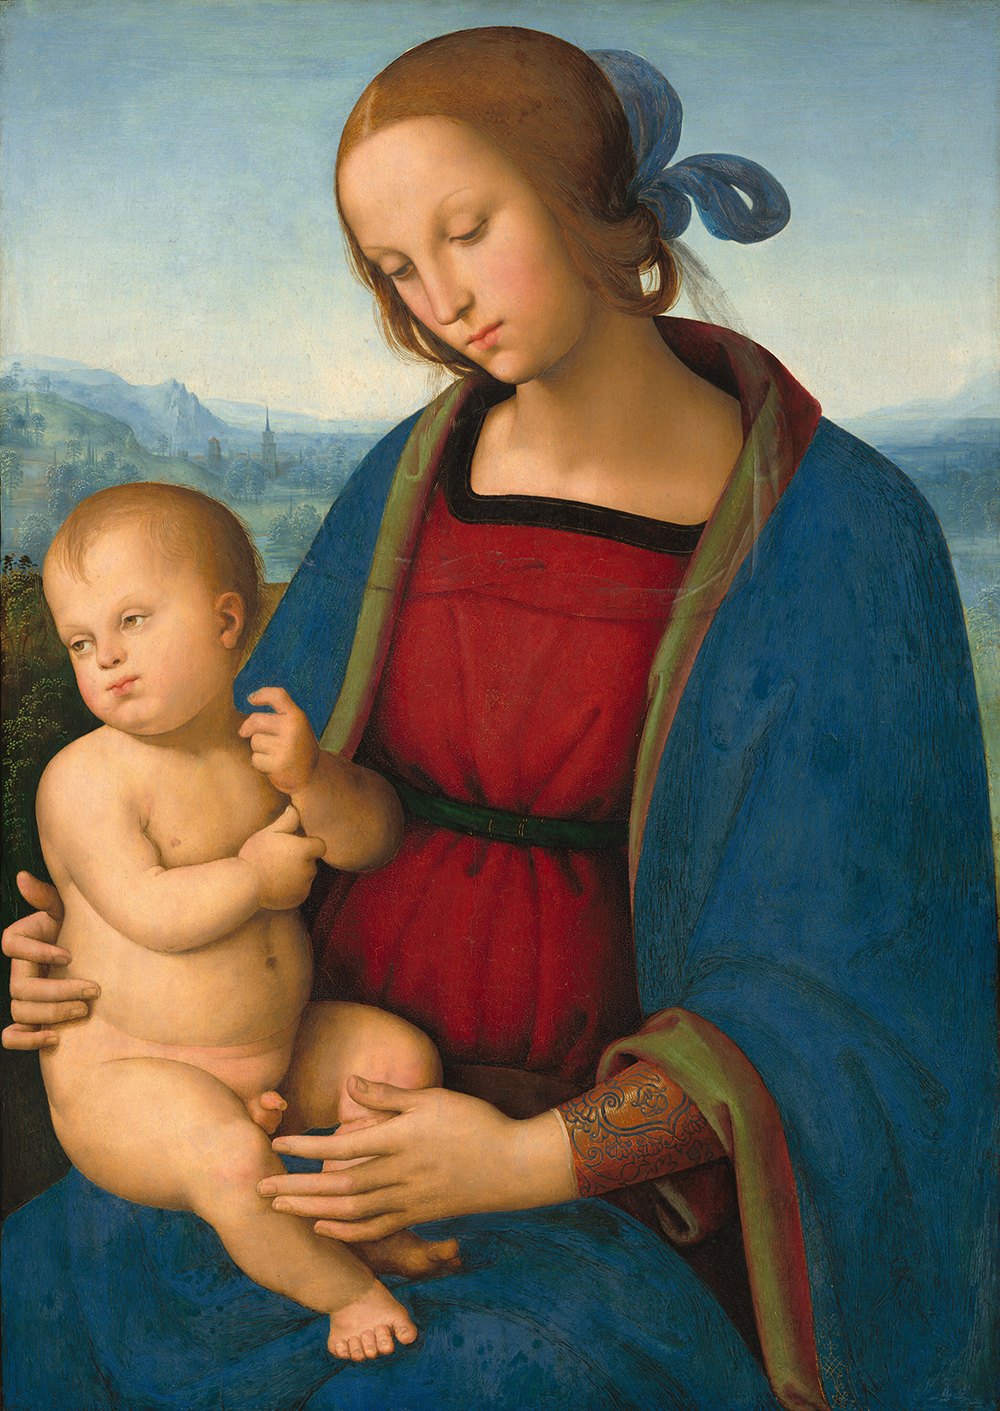 Vista do colo para cima, uma mulher em um roupão azul marinho sobre um vestido vermelho carmesim segura um bebê nu em seu colo nesta pintura vertical.